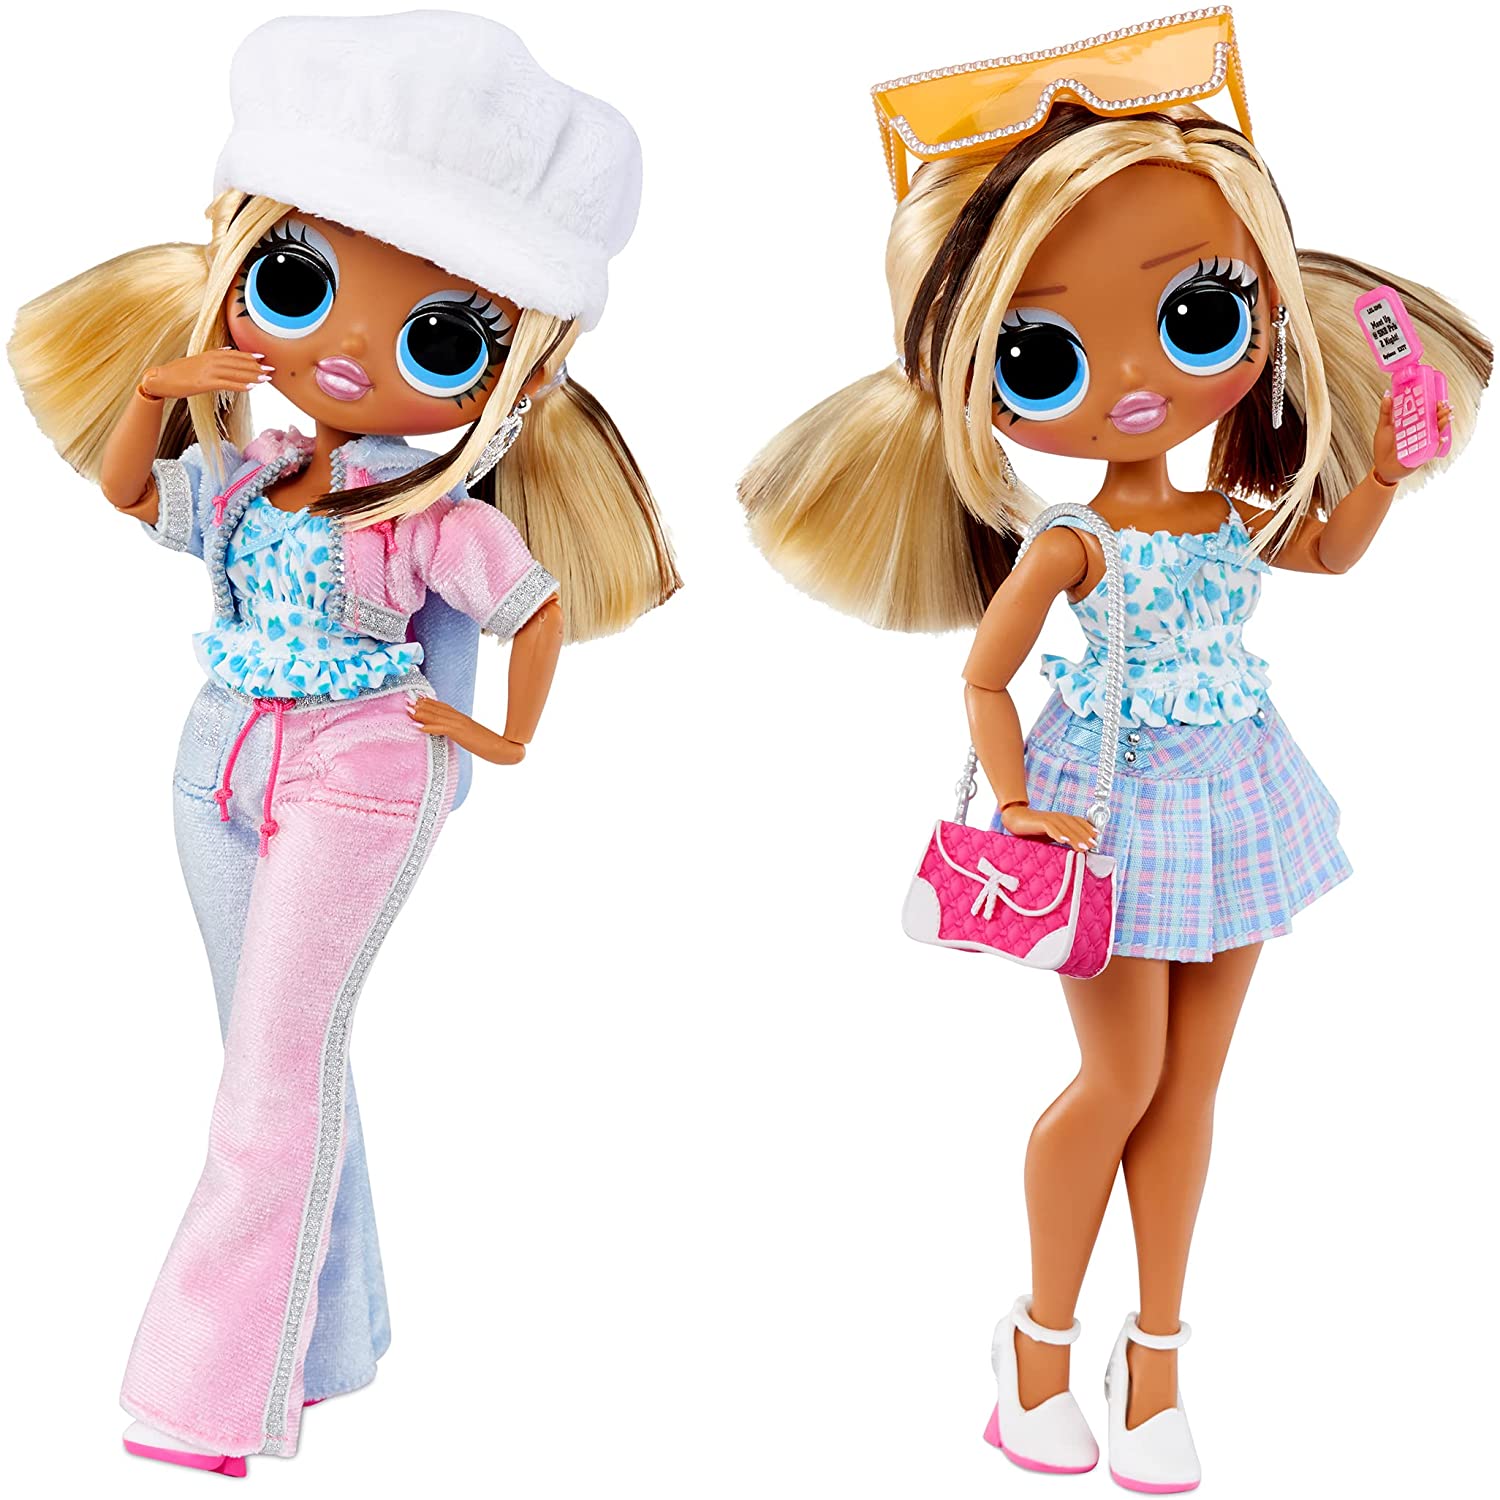 LOL OMG Series 5 dolls: Skatepark Q.T. and Trendsetter 